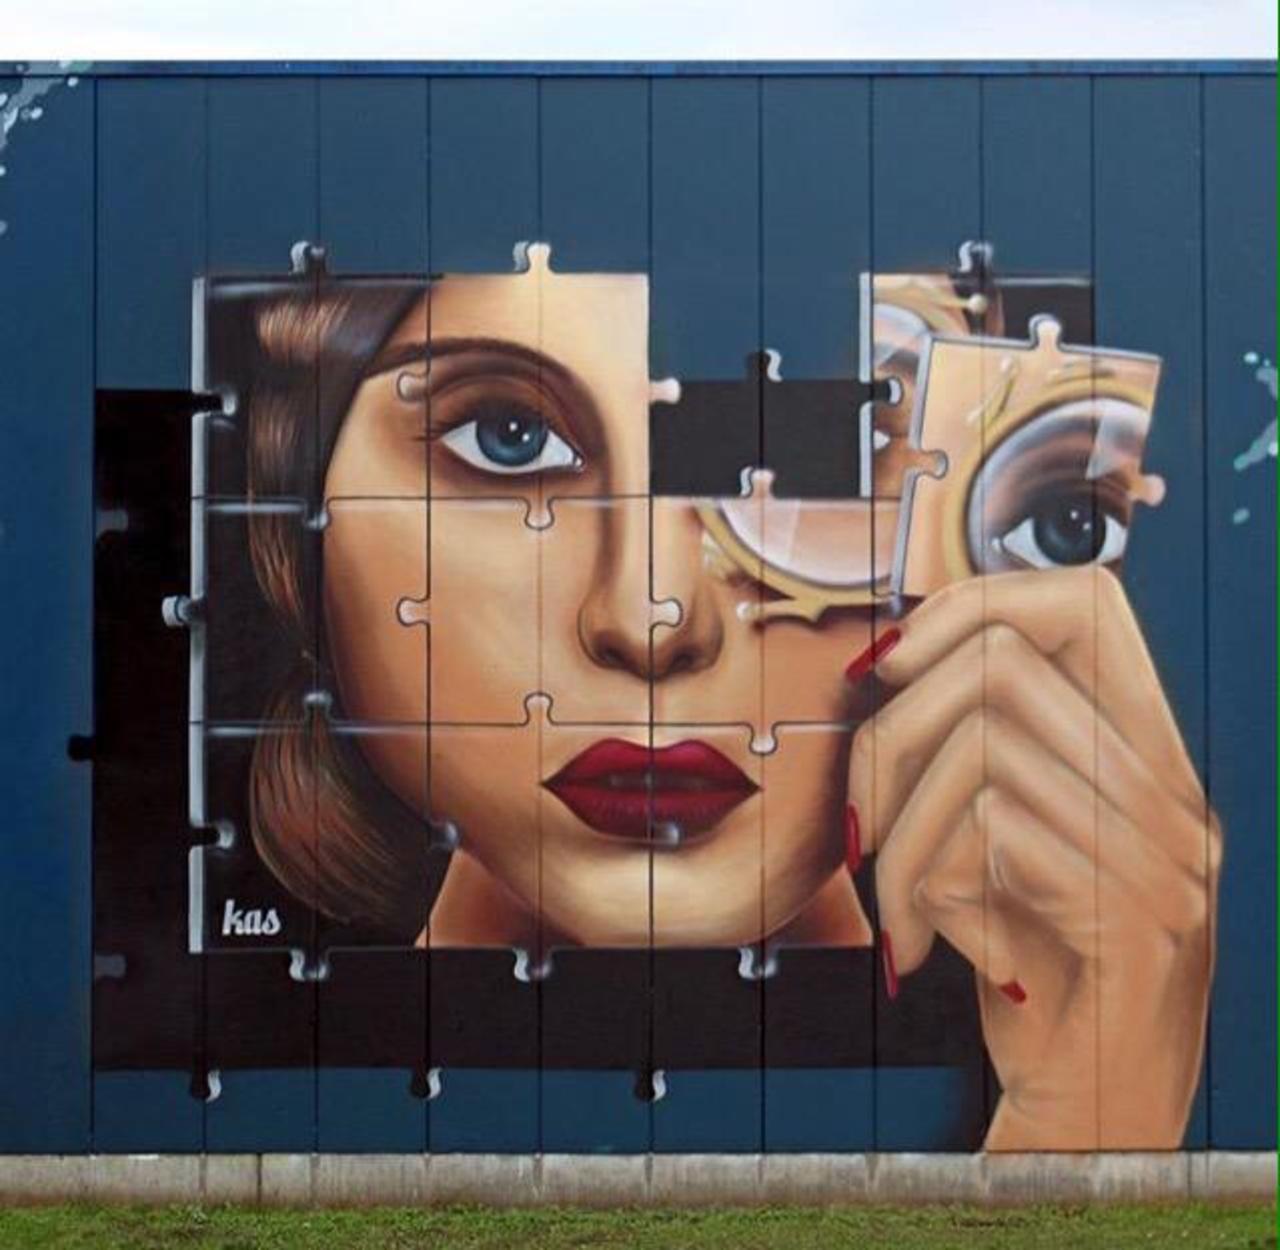 RT belilac "Kas Art's new Street Art "Piece of me" in Aalst Belgium 

#art #graffiti #mural #streetart http://t.co/E6dpcyDyrs"